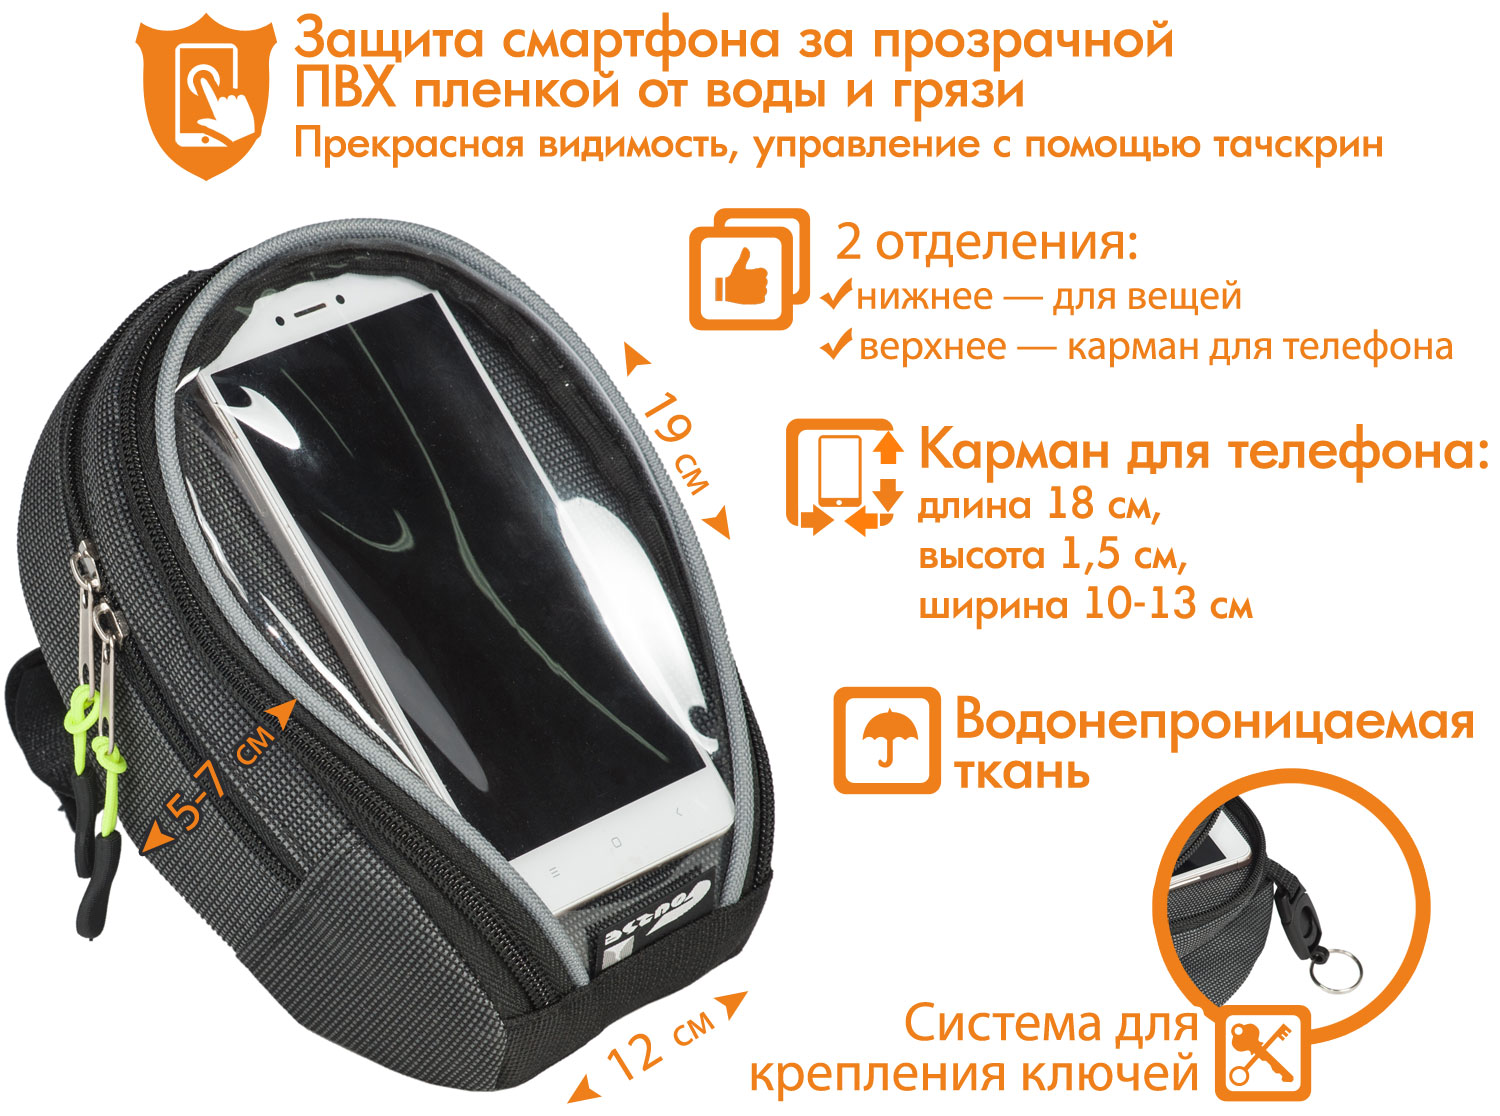 Велосумка на руль «Мастер», с карманом для мобильного телефона (смартфона), достоинства модели